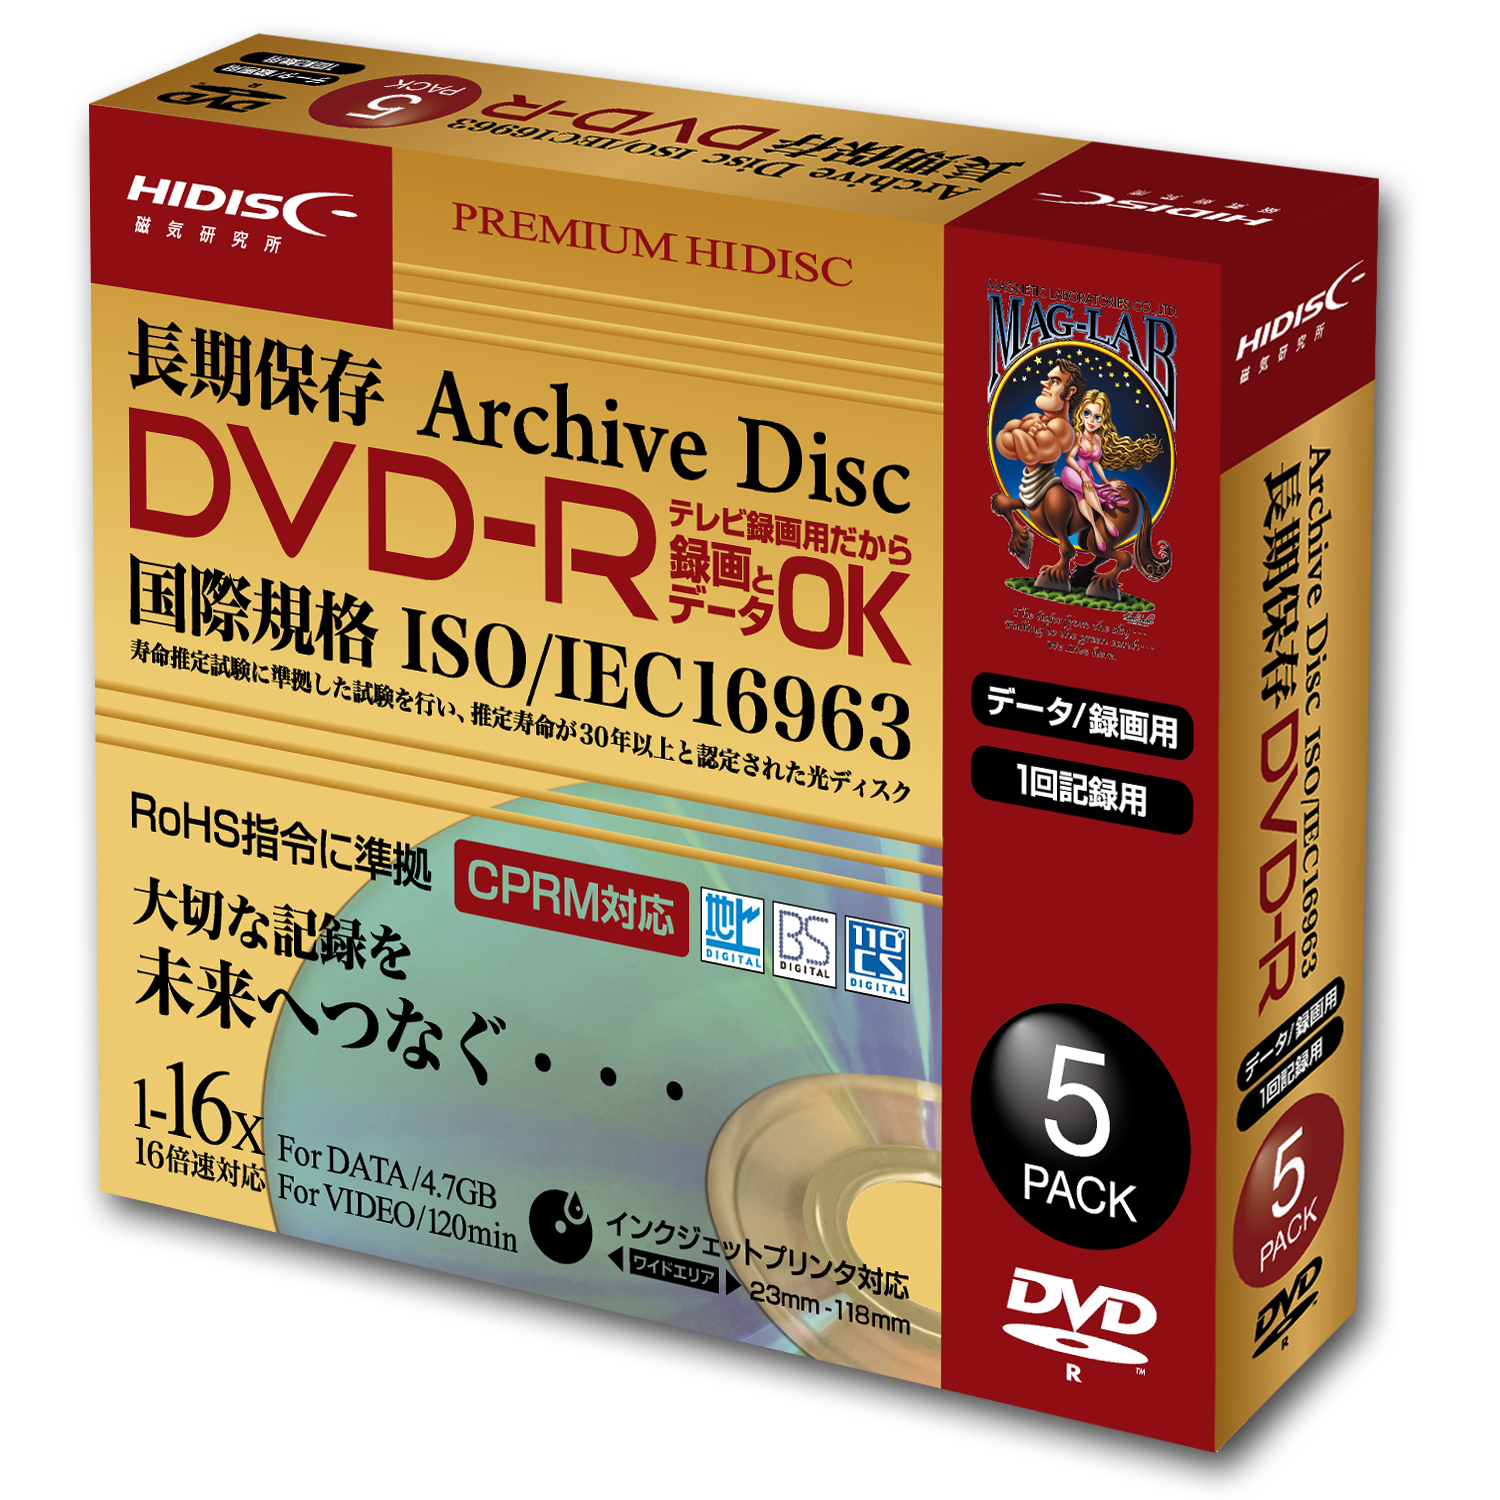 登場大人気アイテム DVD-R メディア 録画用 グリーンハウス CPRM 4.7GB 1-16倍速 20枚スピンドル インックジェット  手書きワイドプリンタブル GH-DVDRCB20 宅